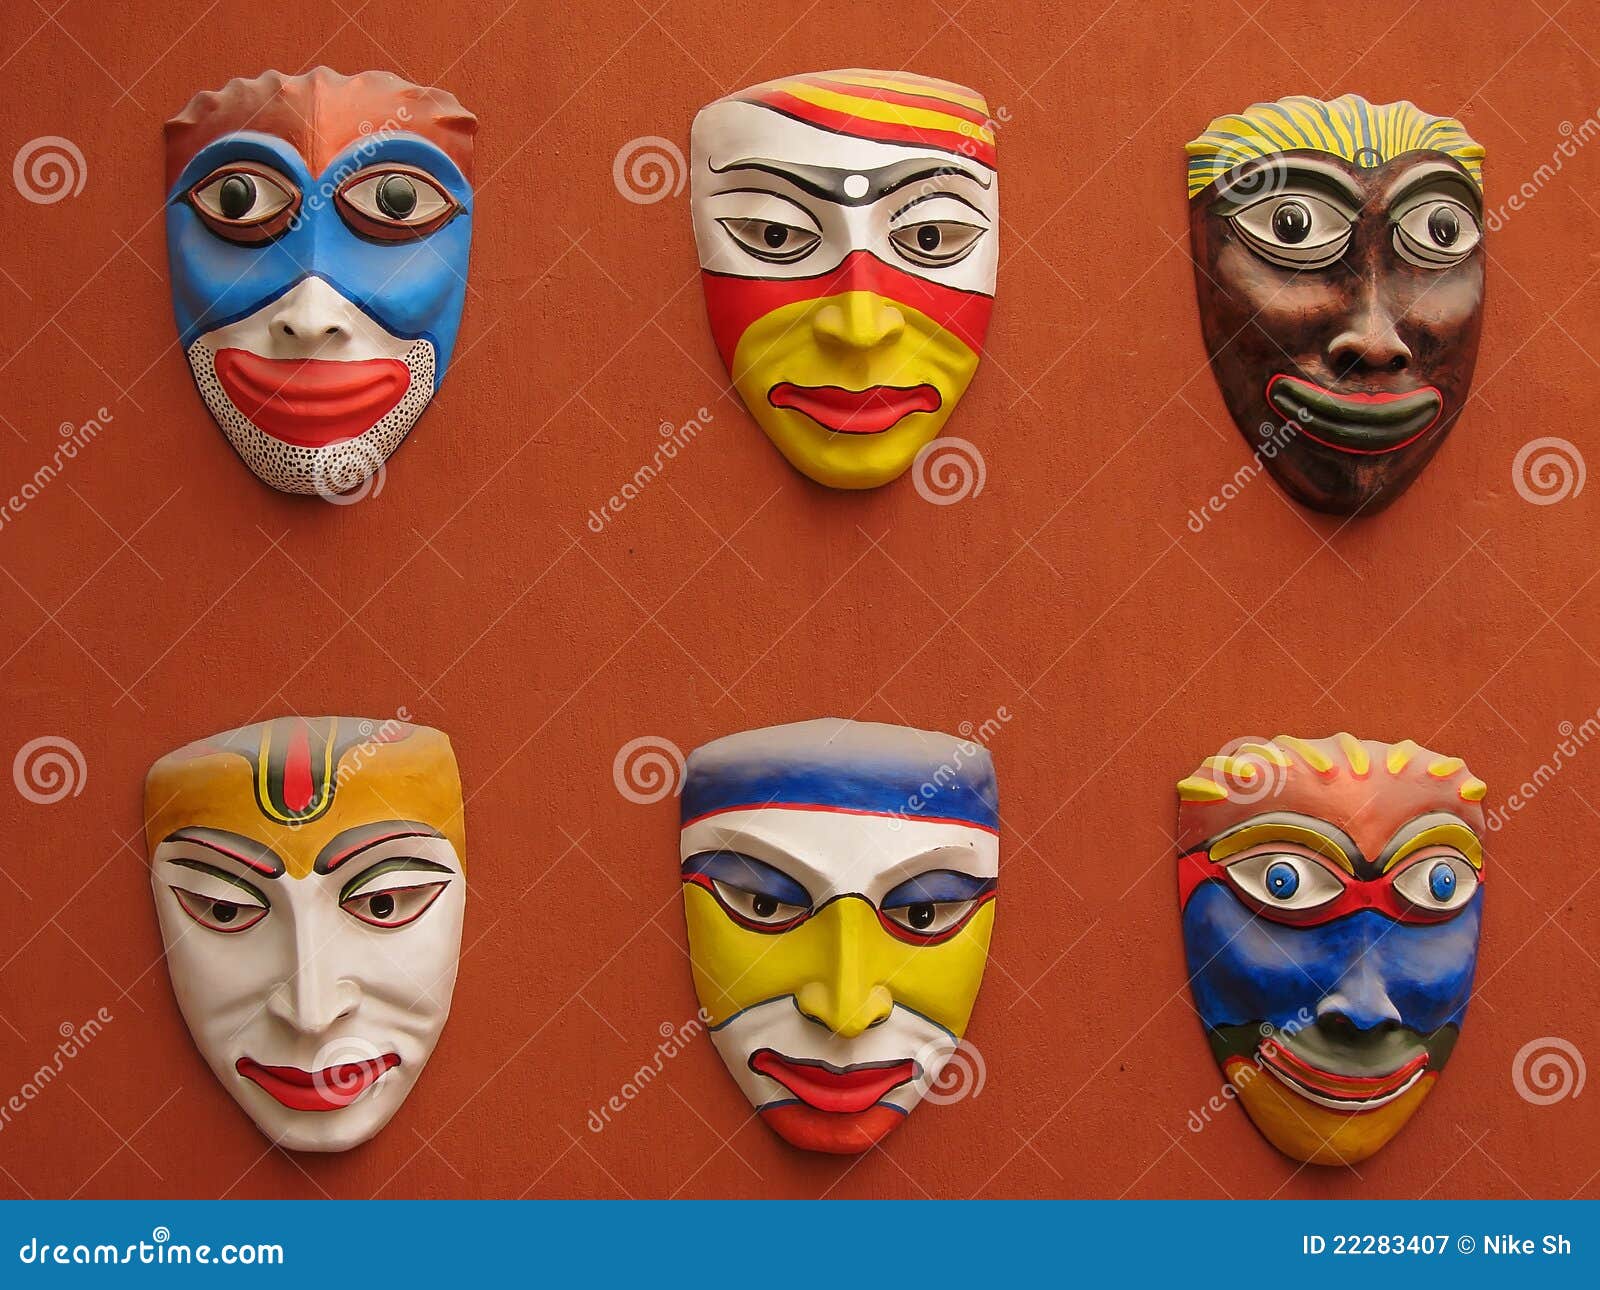 juez toma una foto Vamos Máscaras asiáticas imagen de archivo. Imagen de halloween - 22283407